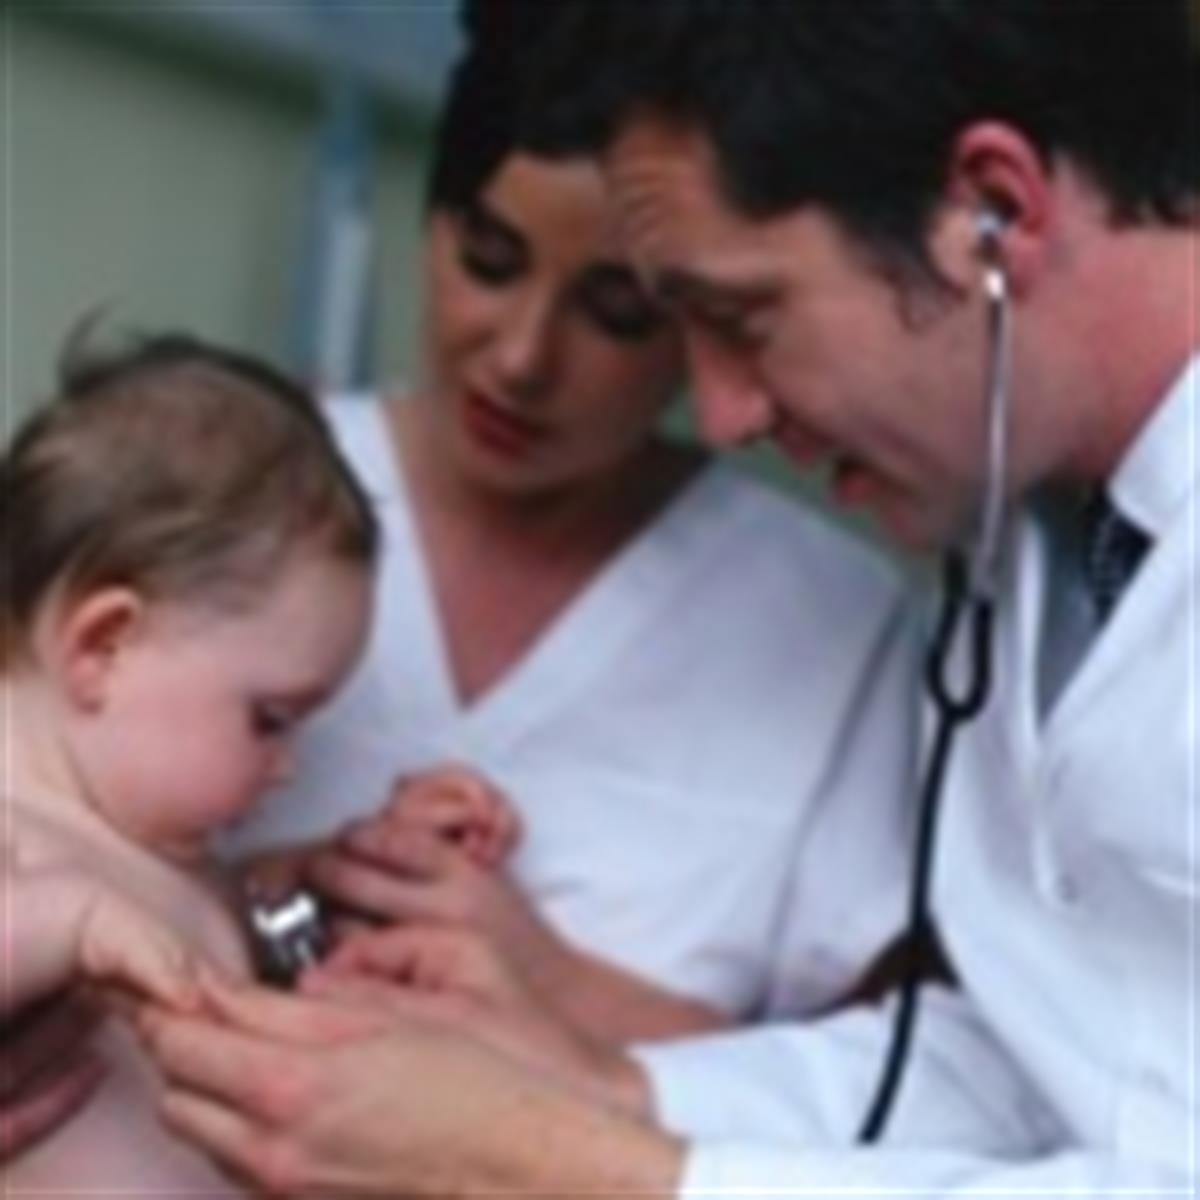 http://www.healthychildren.org/SiteCollectionImages/doctor_exam_baby.jpg?RenditionID=6